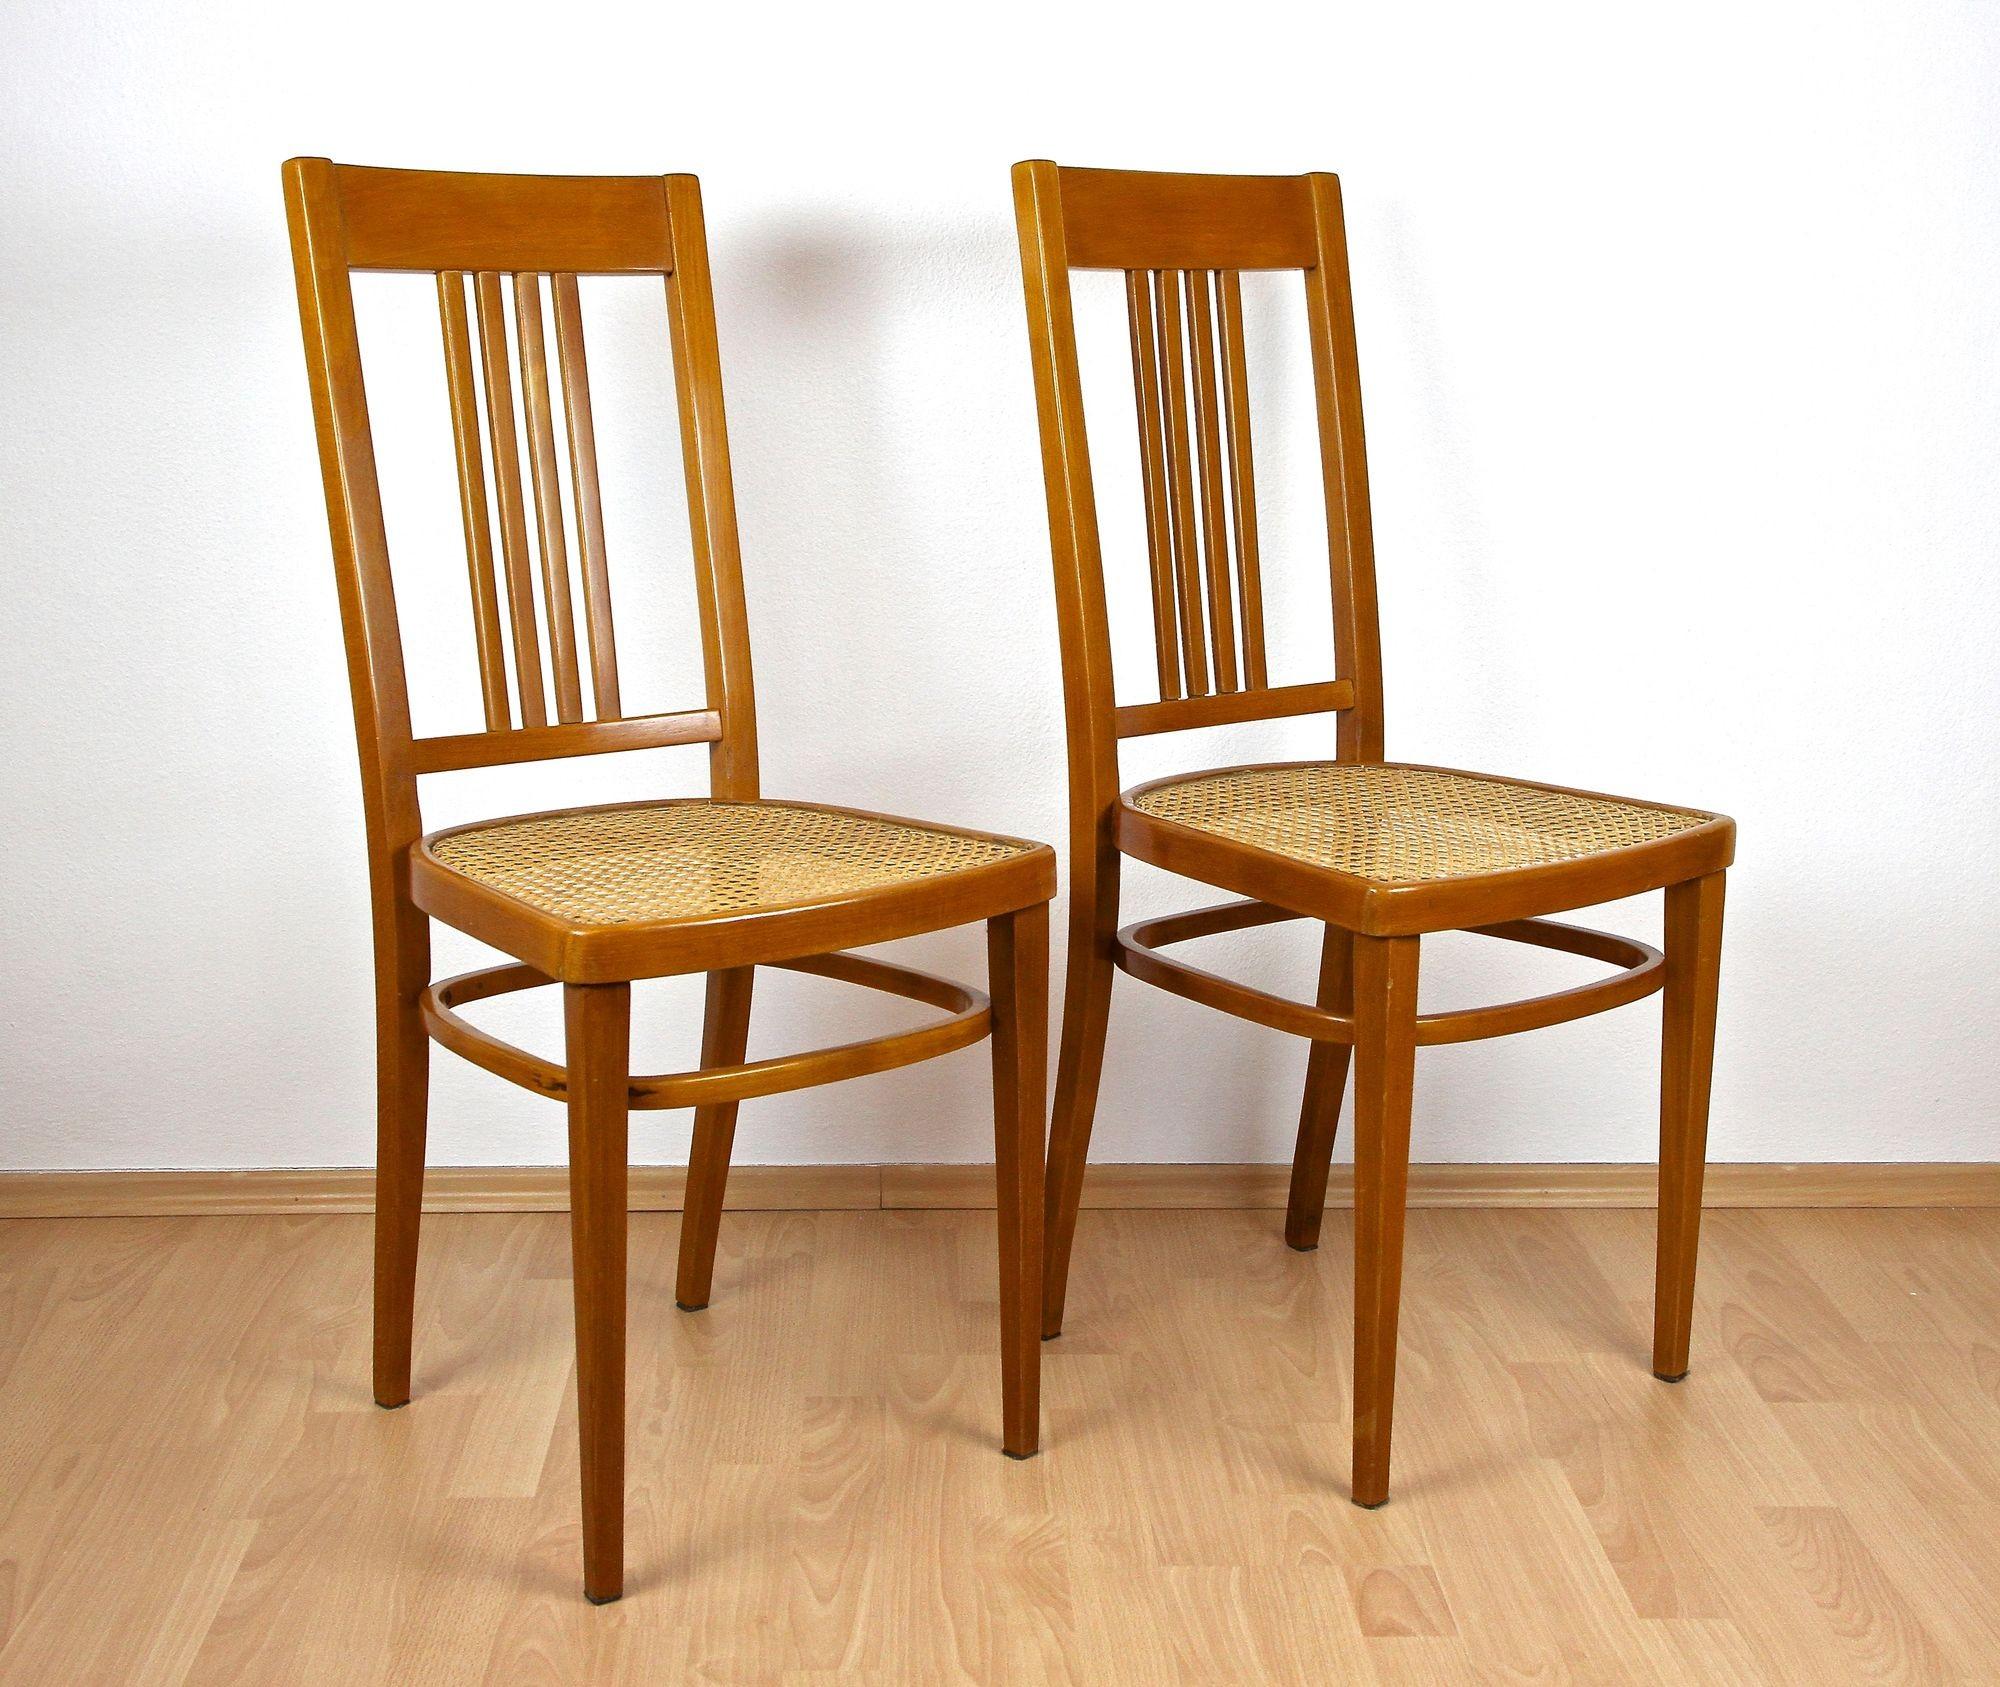 Paire de rares chaises d'appoint en bois courbé du début du XXe siècle, conçues par le célèbre architecte et peintre autrichien Marcel Kammerer (1878 -1959) pour Jacob & Josef Kohn. L'entreprise renommée J&J Kohn était, aux côtés de Thonet, le